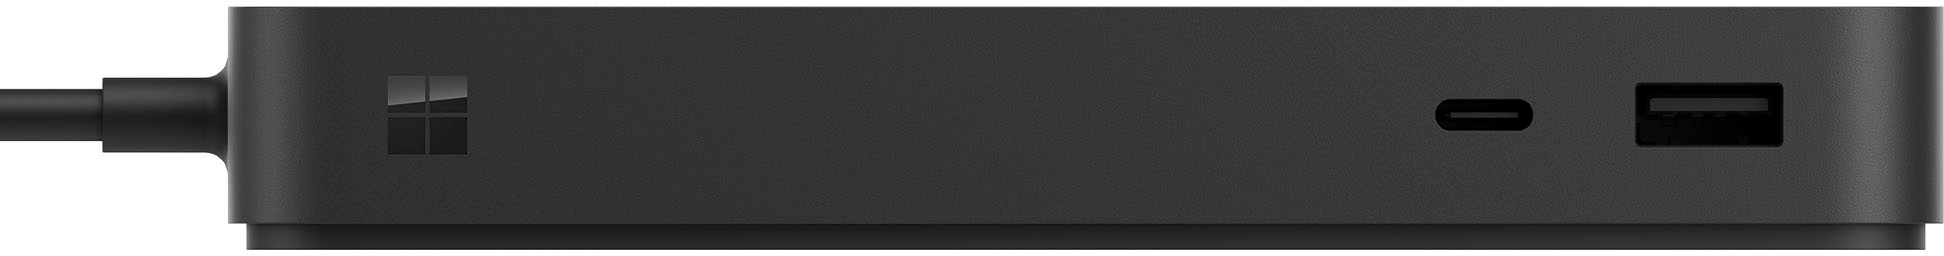 Microsoft Surface Thunderbolt 4 Dock Black T8H-00001 - Best Buy